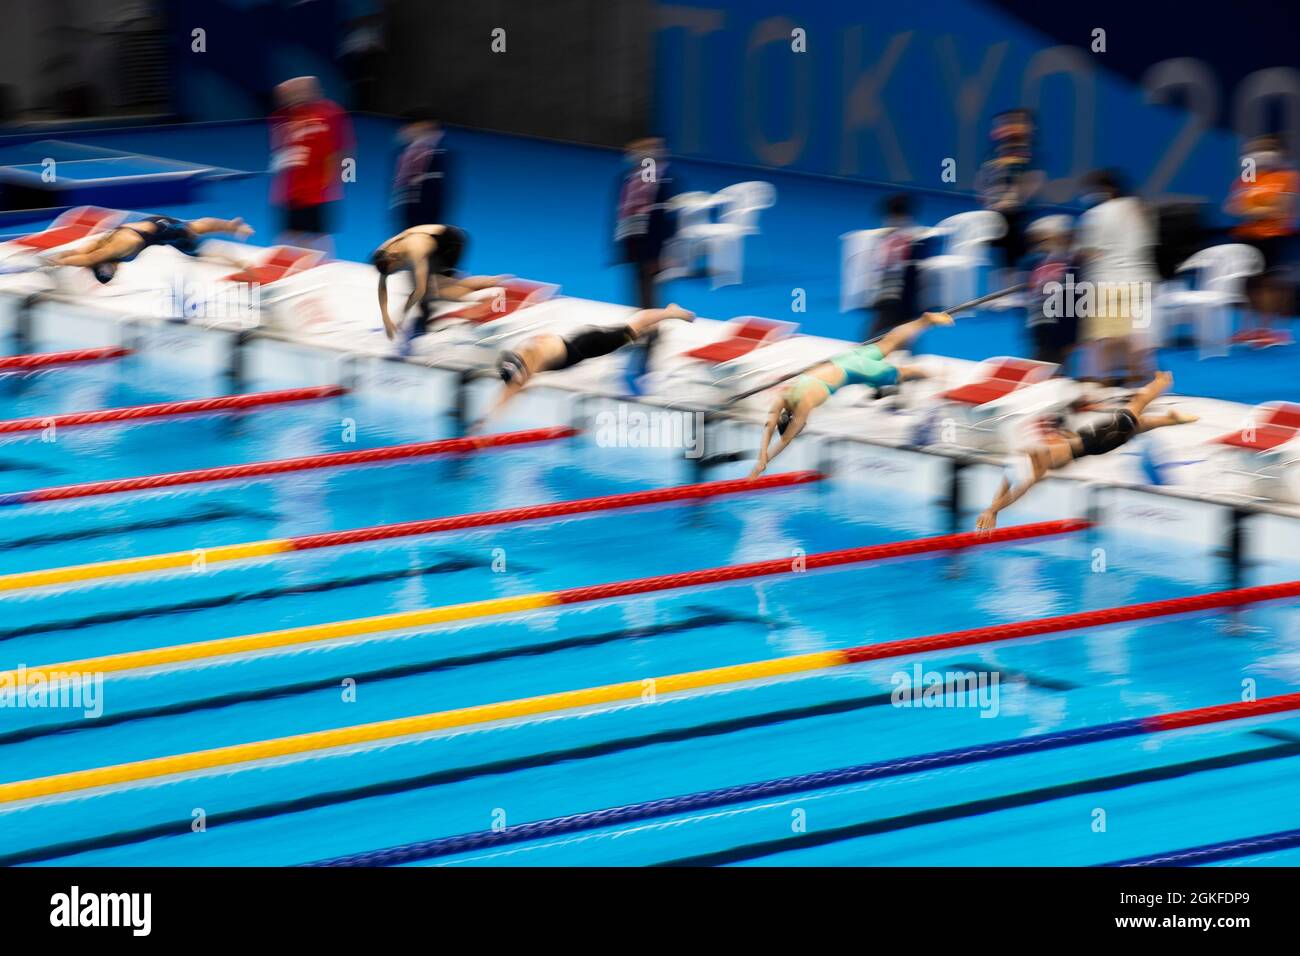 PRUD-TOKIO (KOTO-KU), JAPAN - AUGUST 26:  Featurebild beim Schwimmen vom Start am Tag (3) der Paralympics (Paralympische Spiele) Tokio 2020 waehrend d Stock Photo